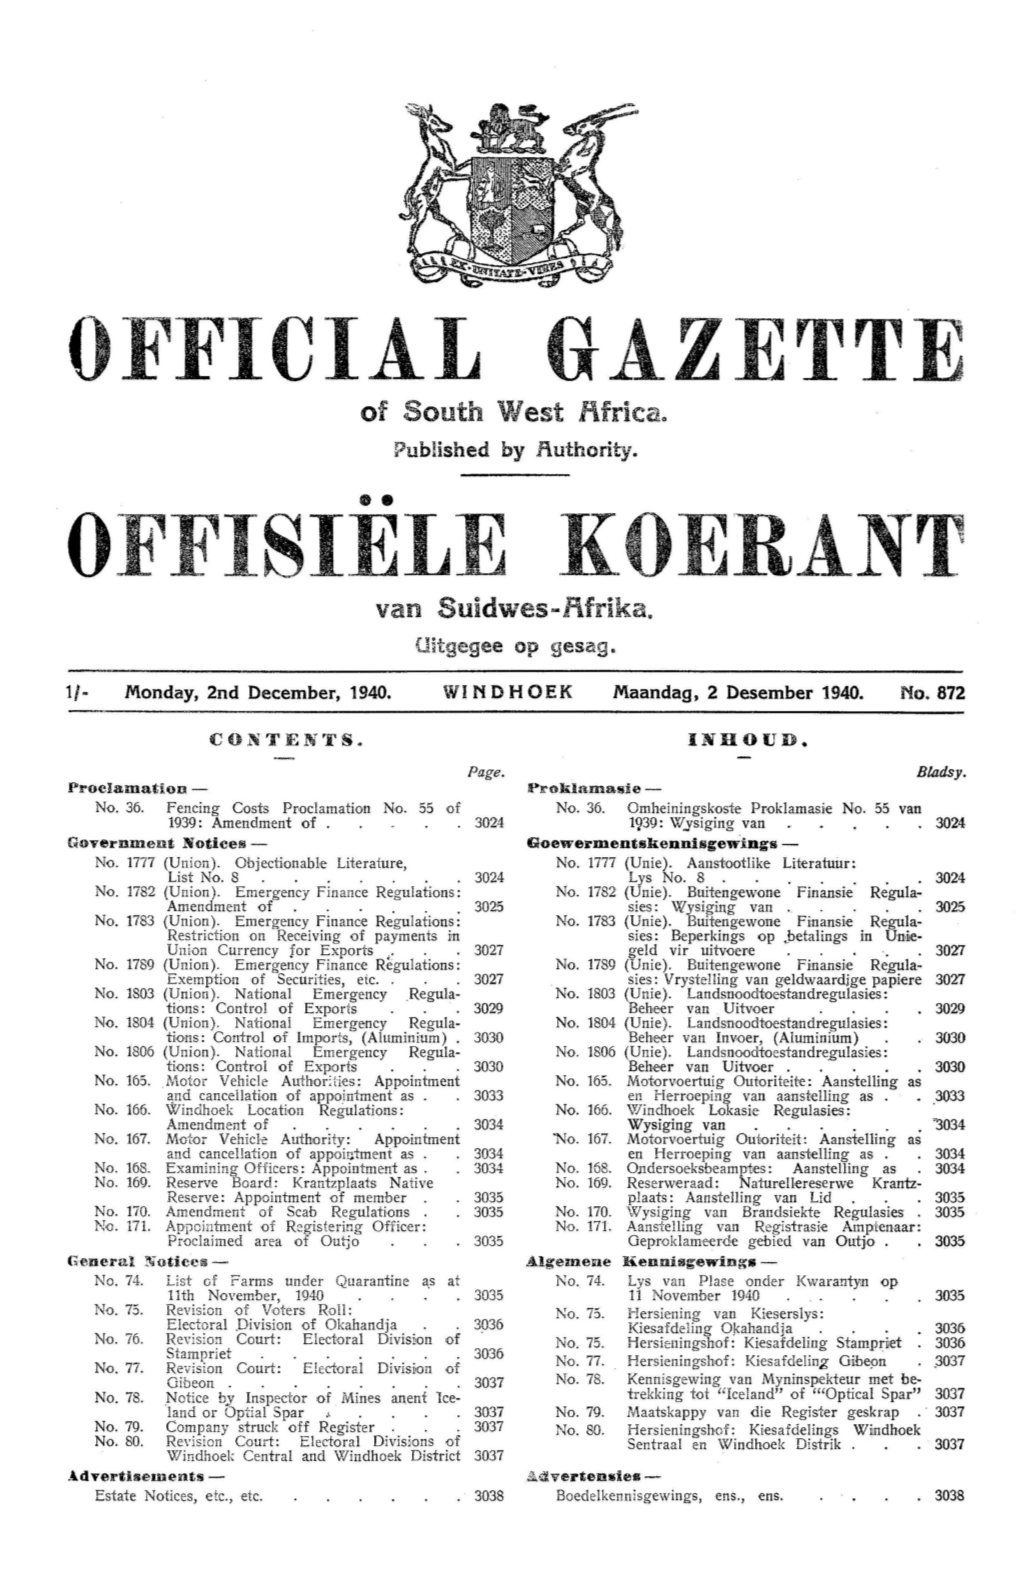 Official Gazette Offisiele Koerant